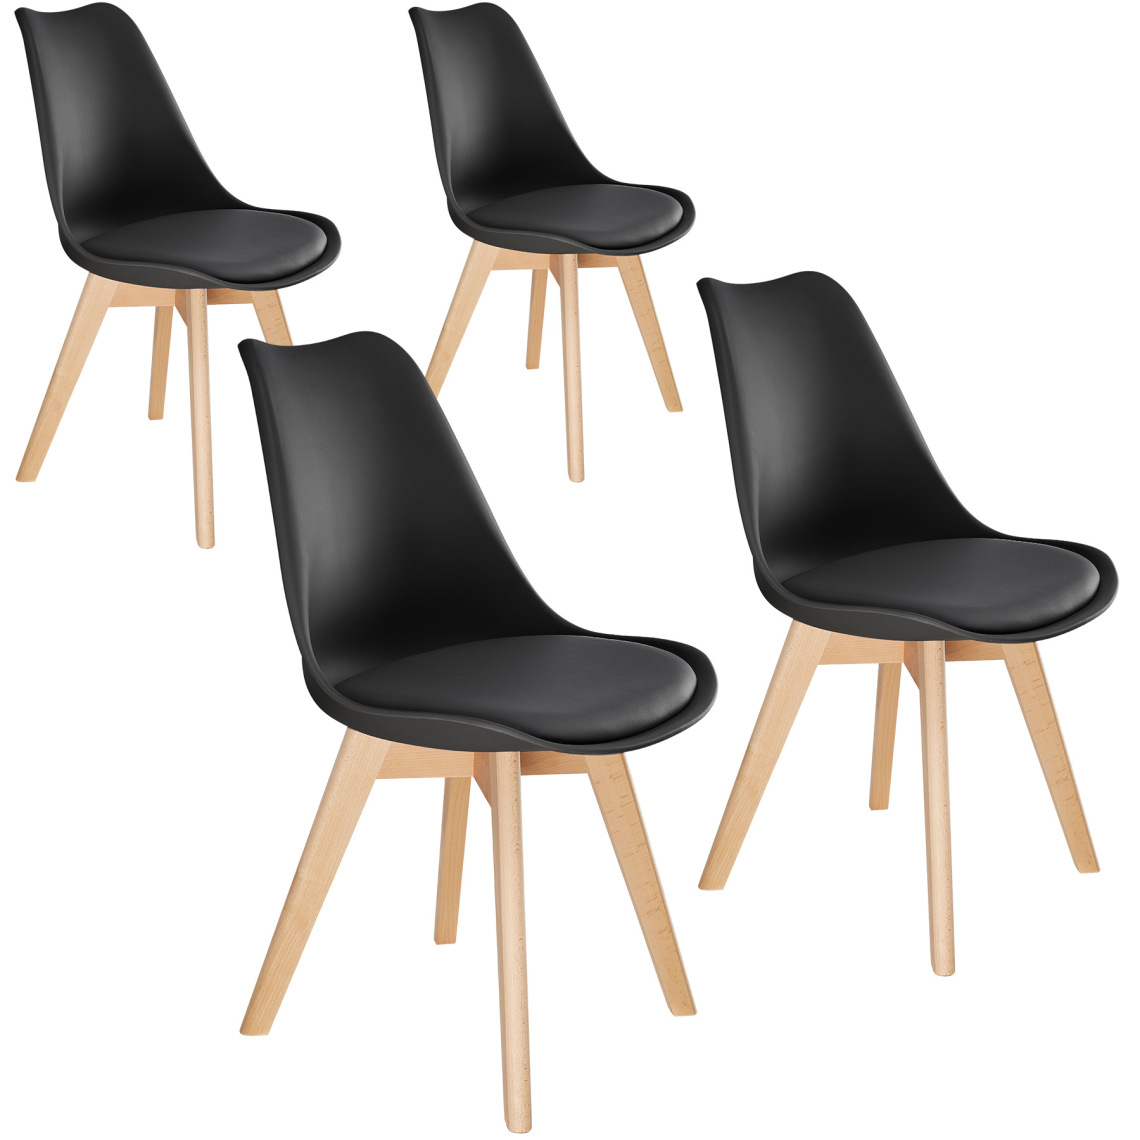 Tectake - 4 Chaises de Salle à Manger FRÉDÉRIQUE Style Scandinave Pieds en Bois Massif Design Moderne - noir - Chaises